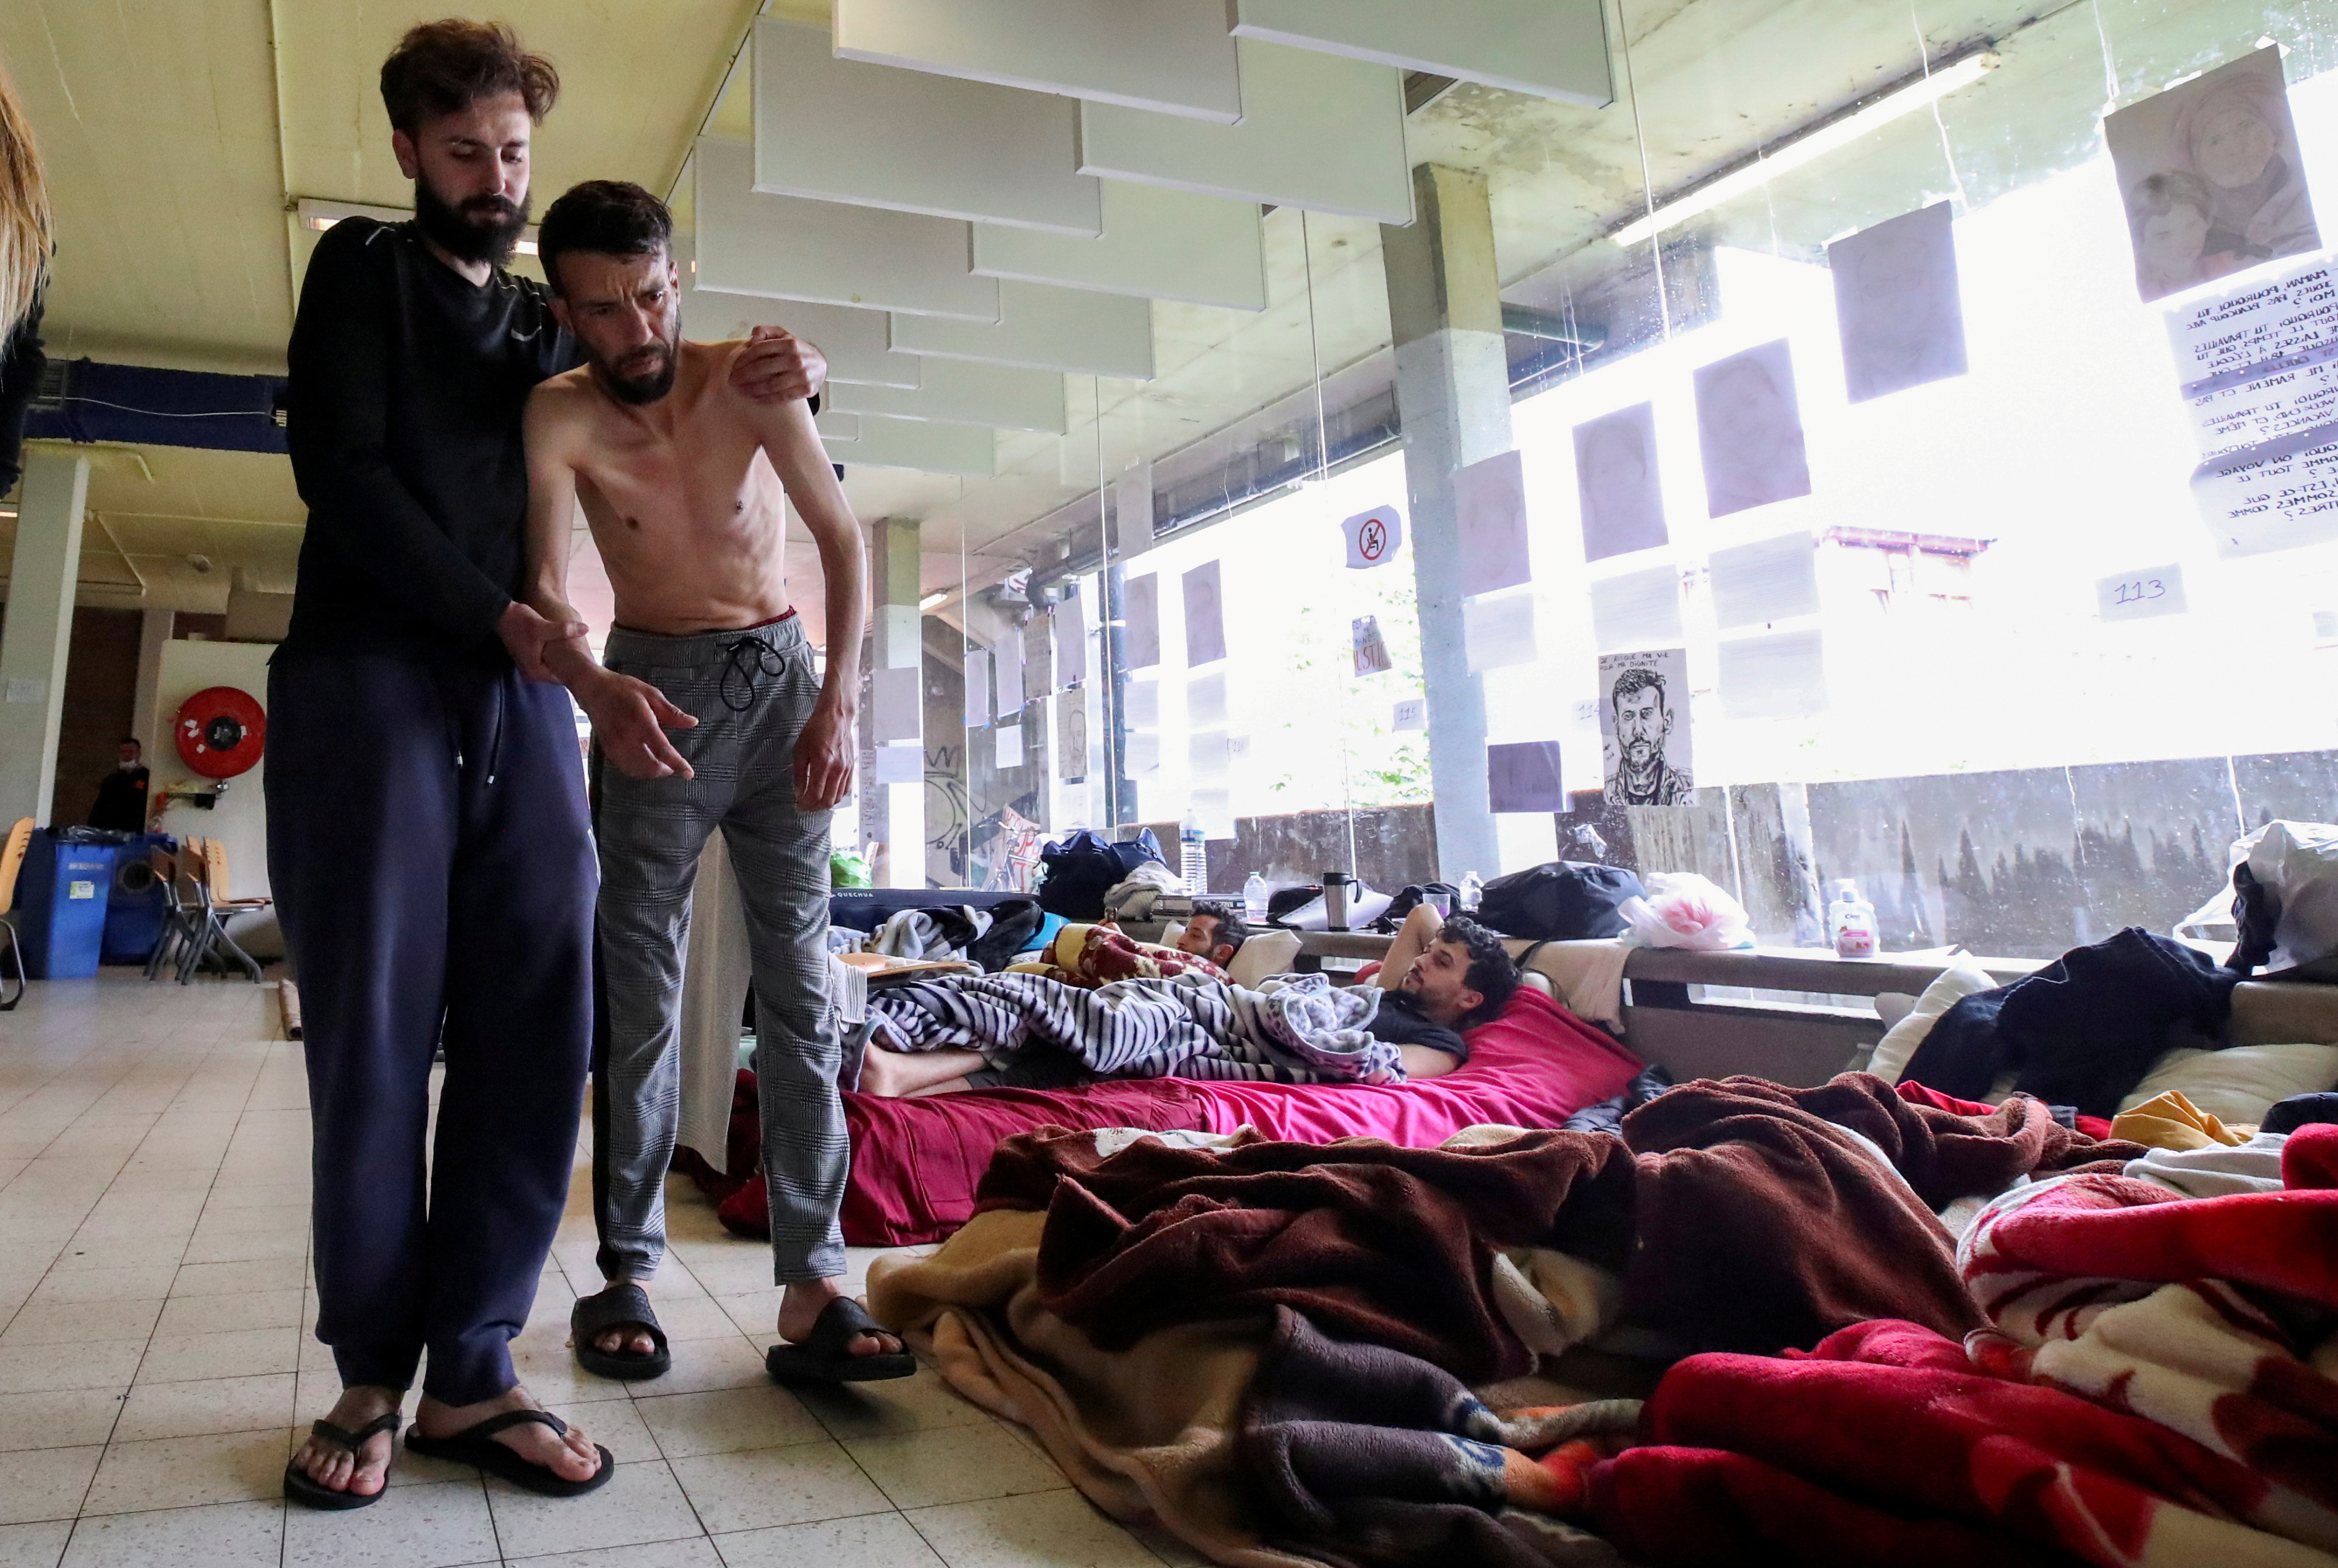 Youssef Bouzidi, un solicitante de asilo marroquí que solicita ser regularizado polo goberno belga para ter acceso á asistencia sanitaria e que está en folga de fame durante máis dun mes, está axudado por unha persoa nunha habitación do campus da universidade belga ULB, onde centos de migrantes están en folga de fame, en Bruxelas, Bélxica, o 29 de xuño de 2021. REUTERS / Yves Herman